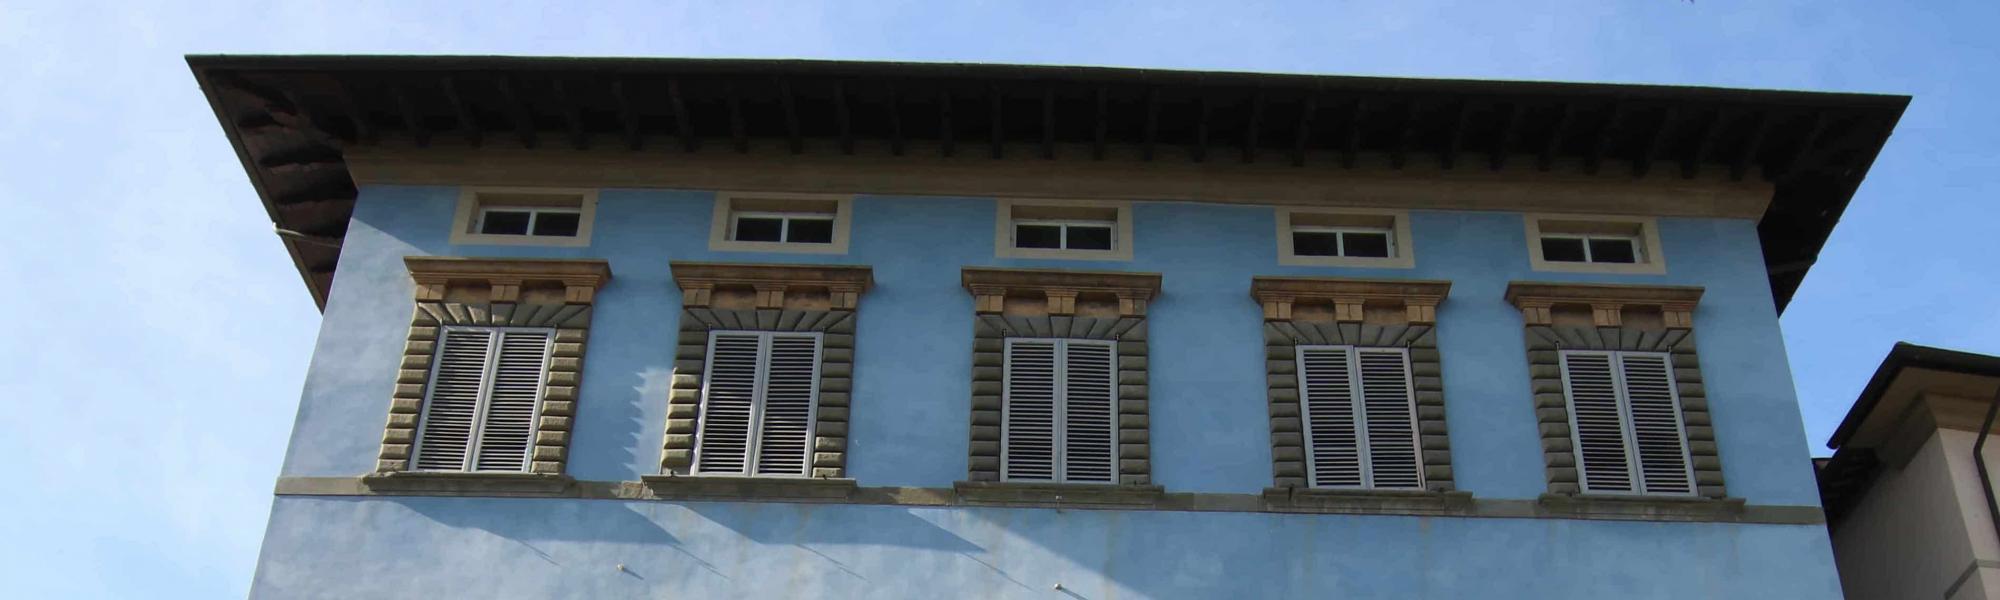 Palazzo Giuli-Rosselmini-Gualandi _ Palazzo Blu (A. Matteucci)